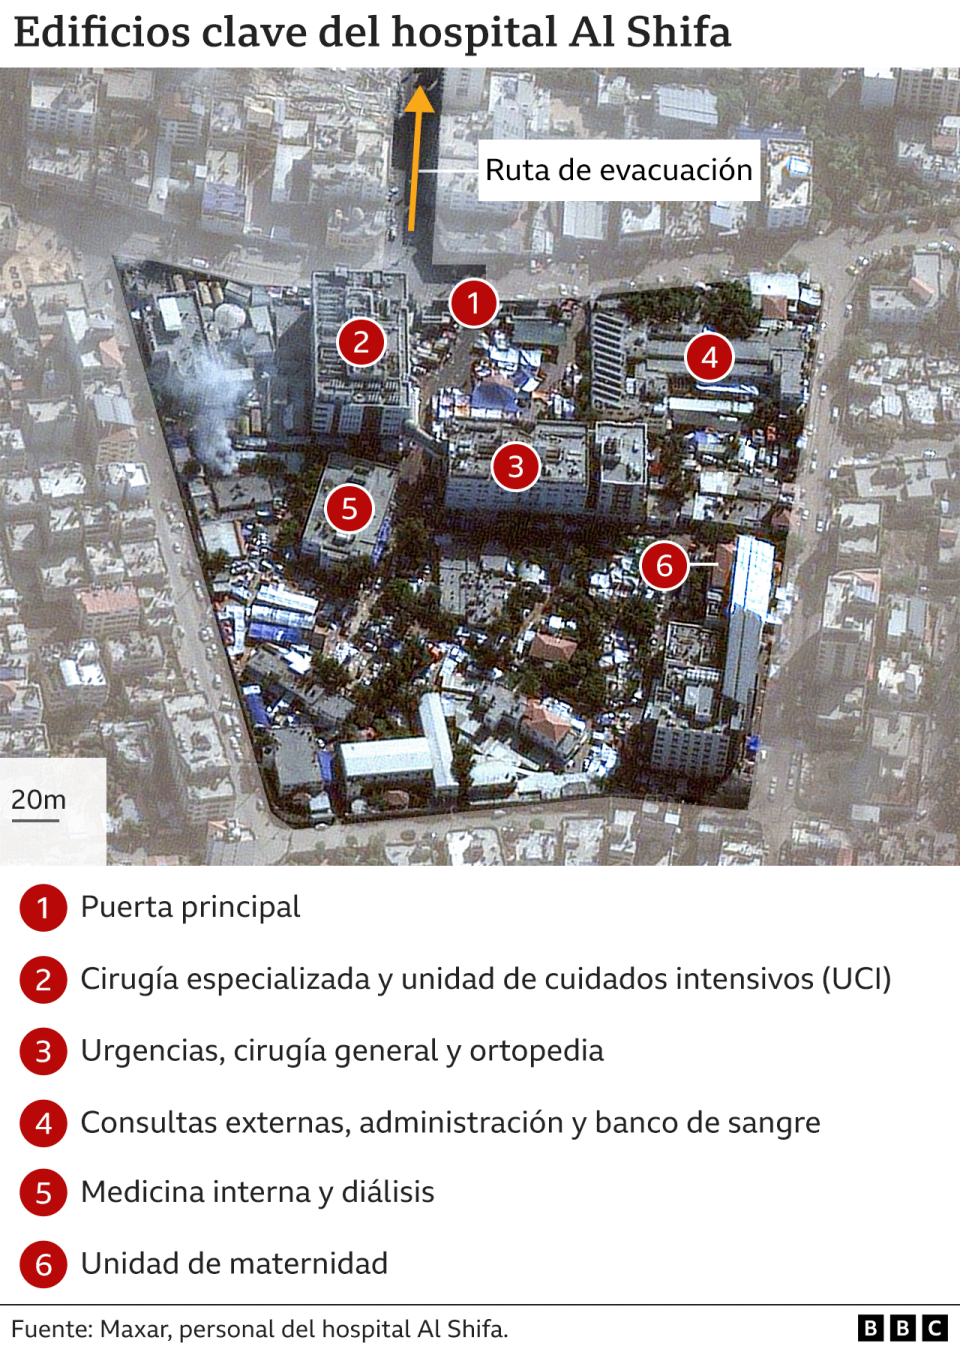 Imagen satelital que muestra los principales edificios del Hospital Al Shifa en Gaza